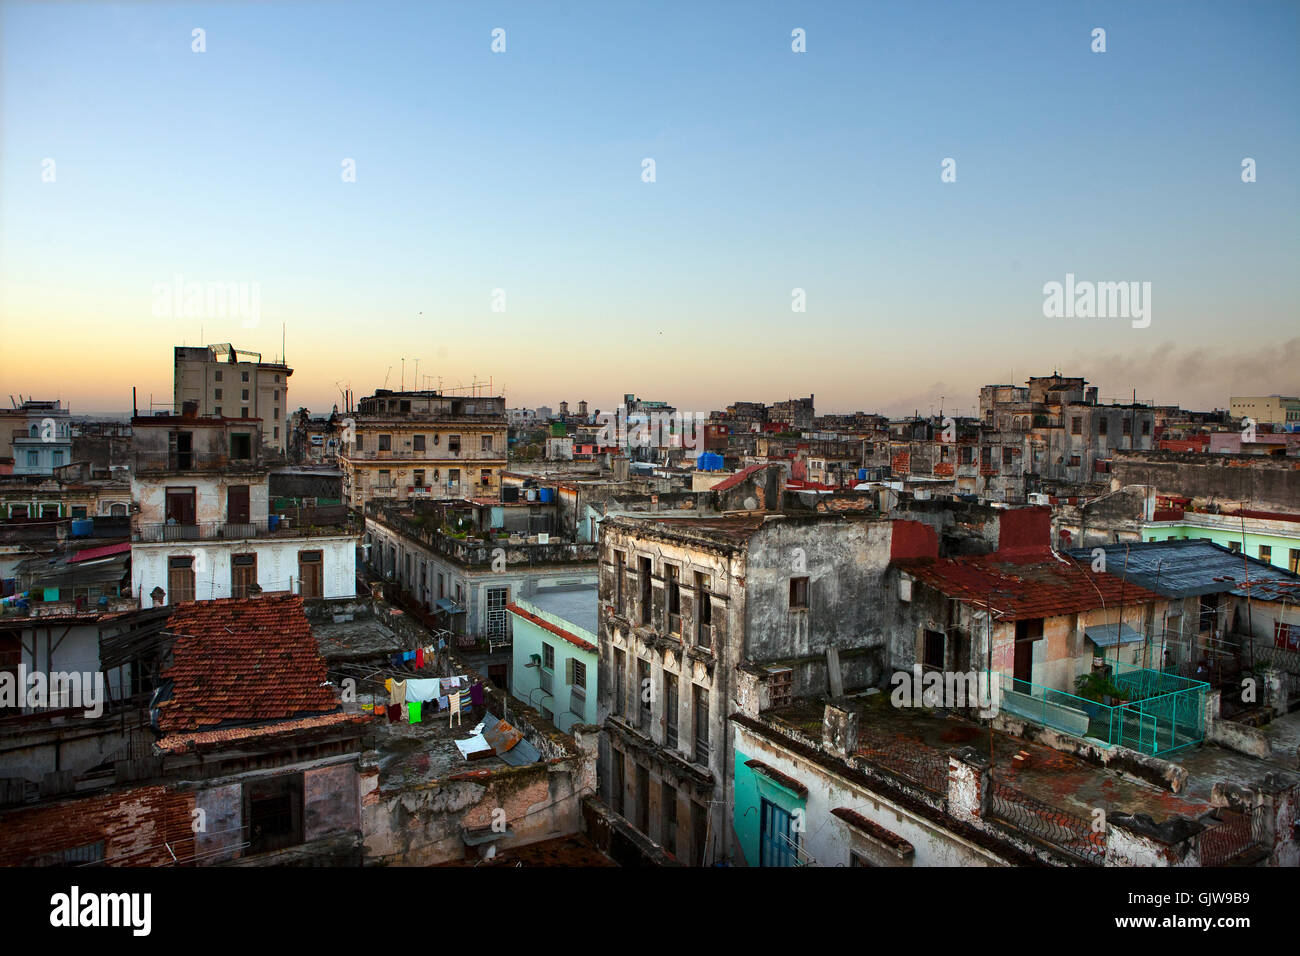 Une vue sur les toits de la vieille ville de La Havane, Cuba Banque D'Images